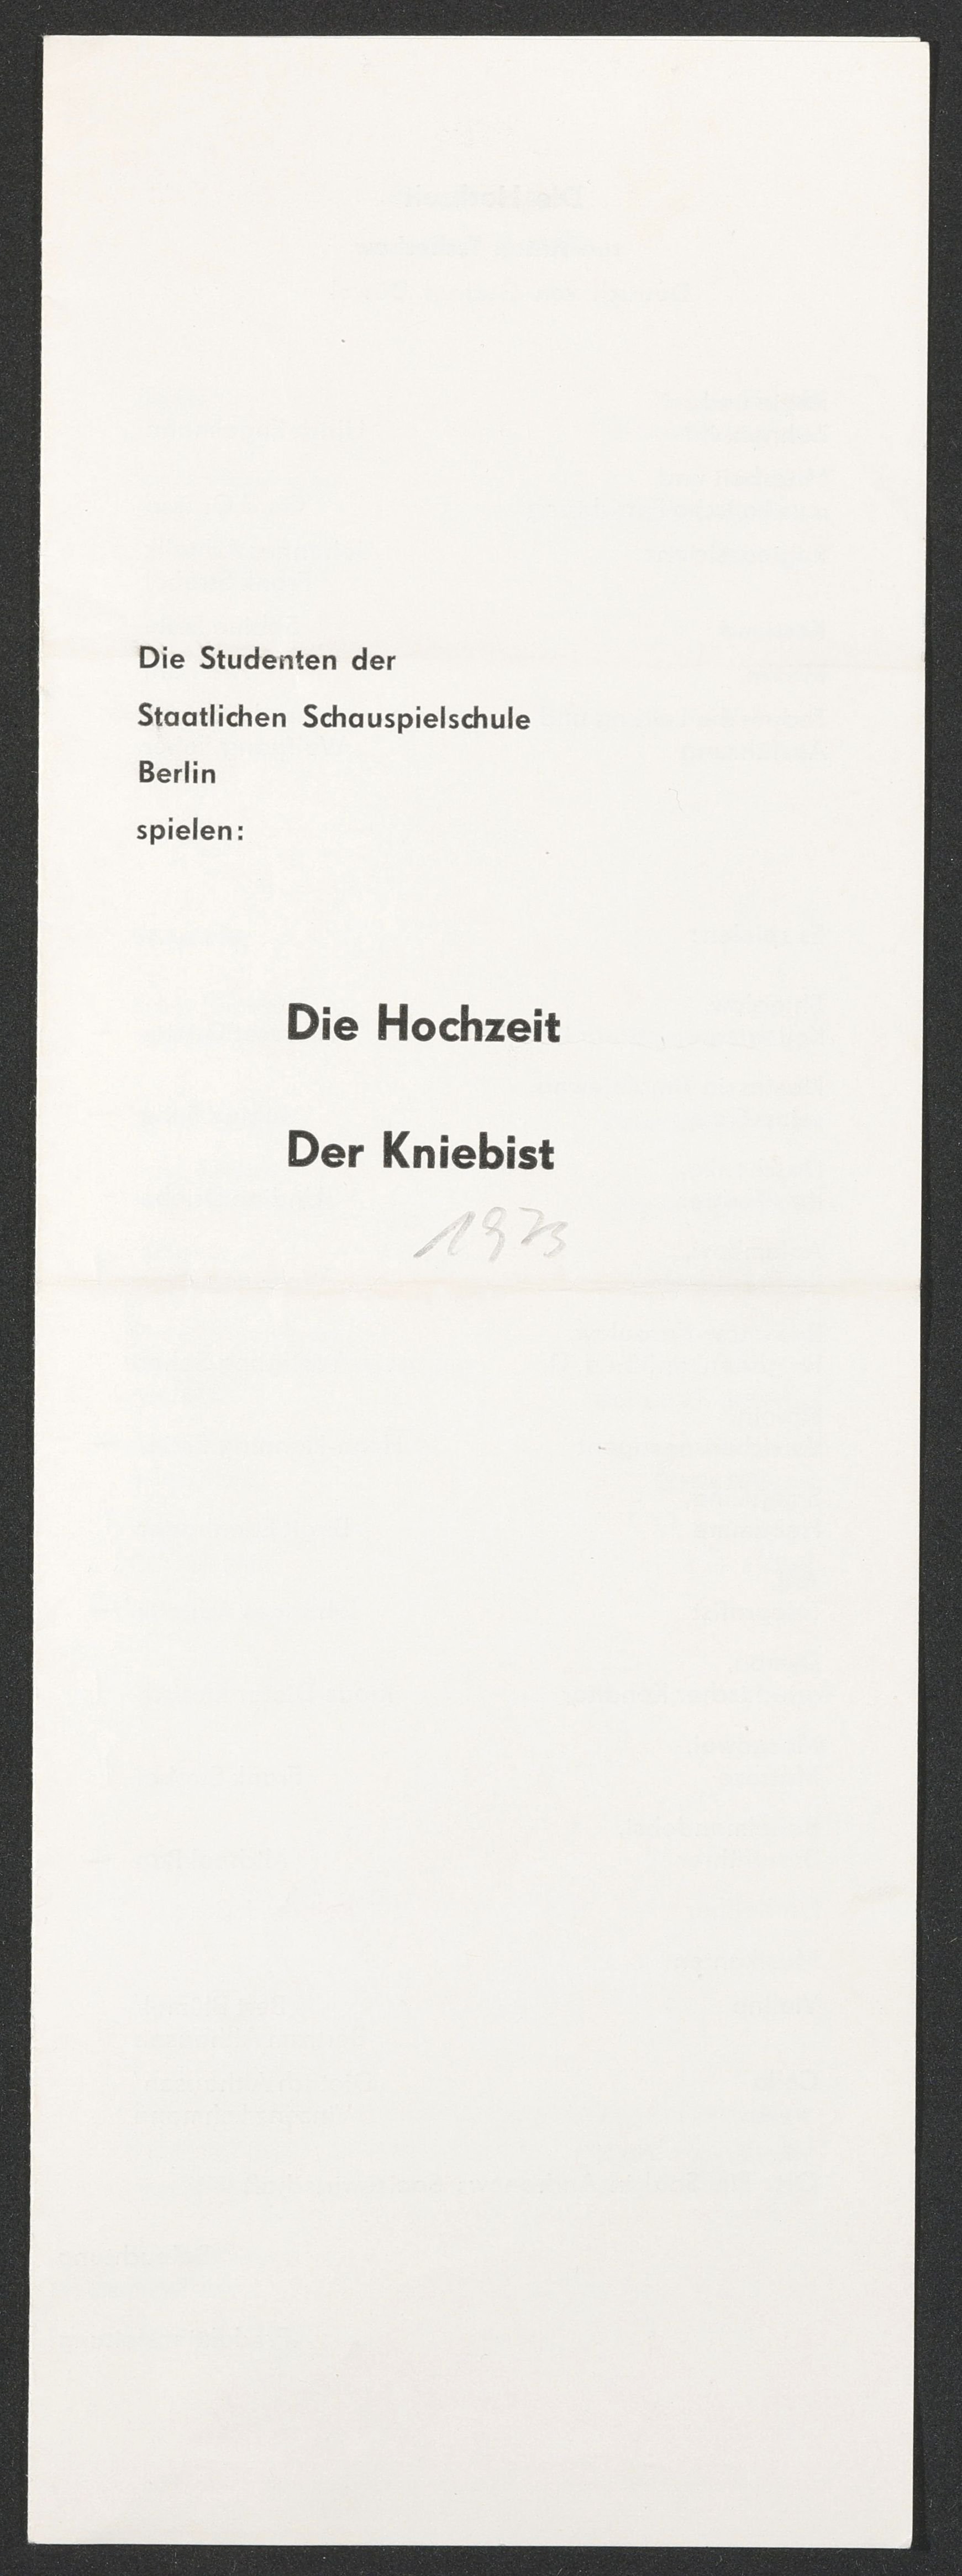 Programmheft zu "Die Hochzeit" und "Der Kniebist" am bat-Studiotheater 1972 (Hochschule für Schauspielkunst Ernst Busch Berlin RR-F)